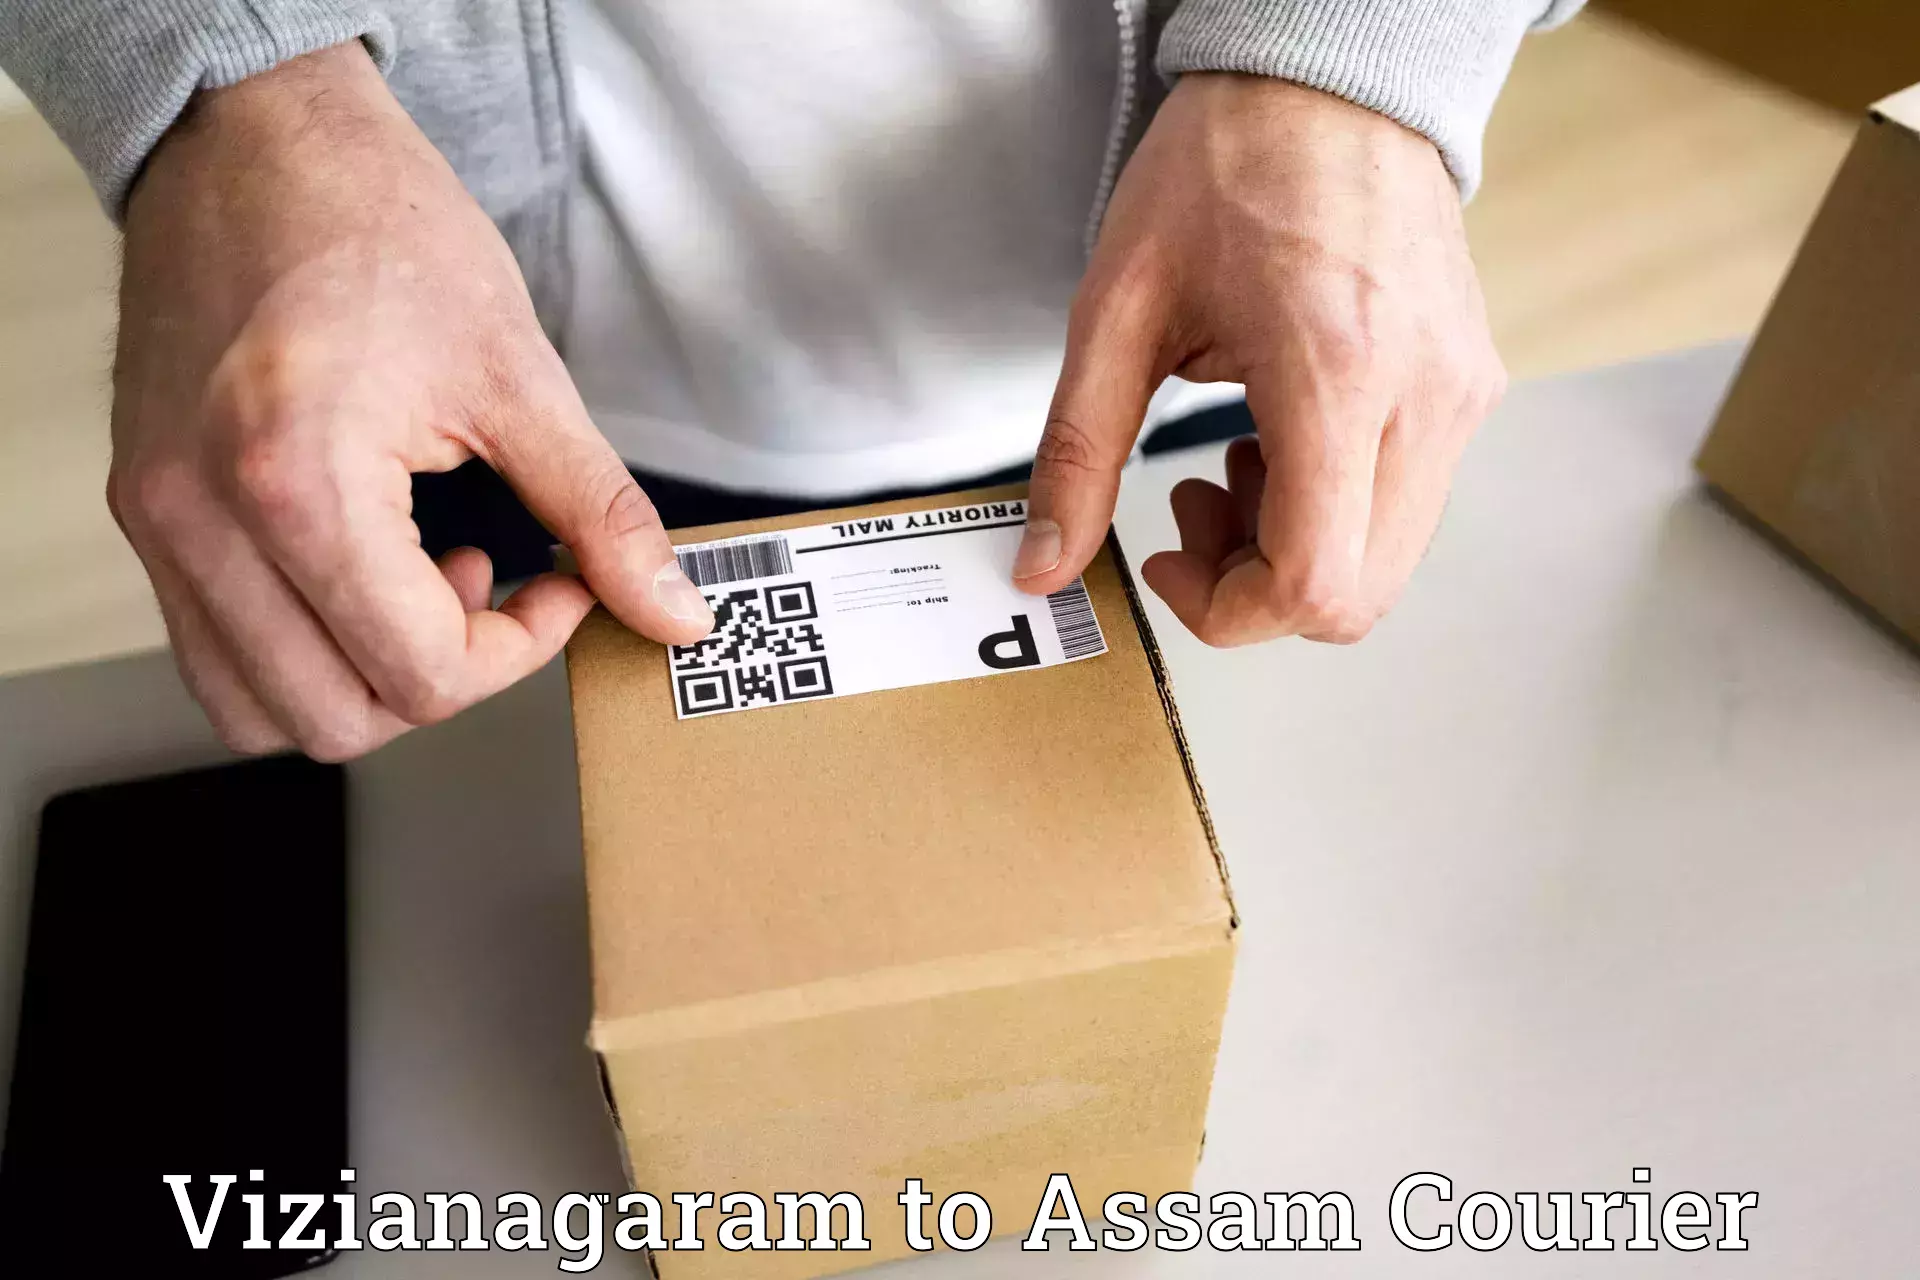 Global parcel delivery Vizianagaram to Assam